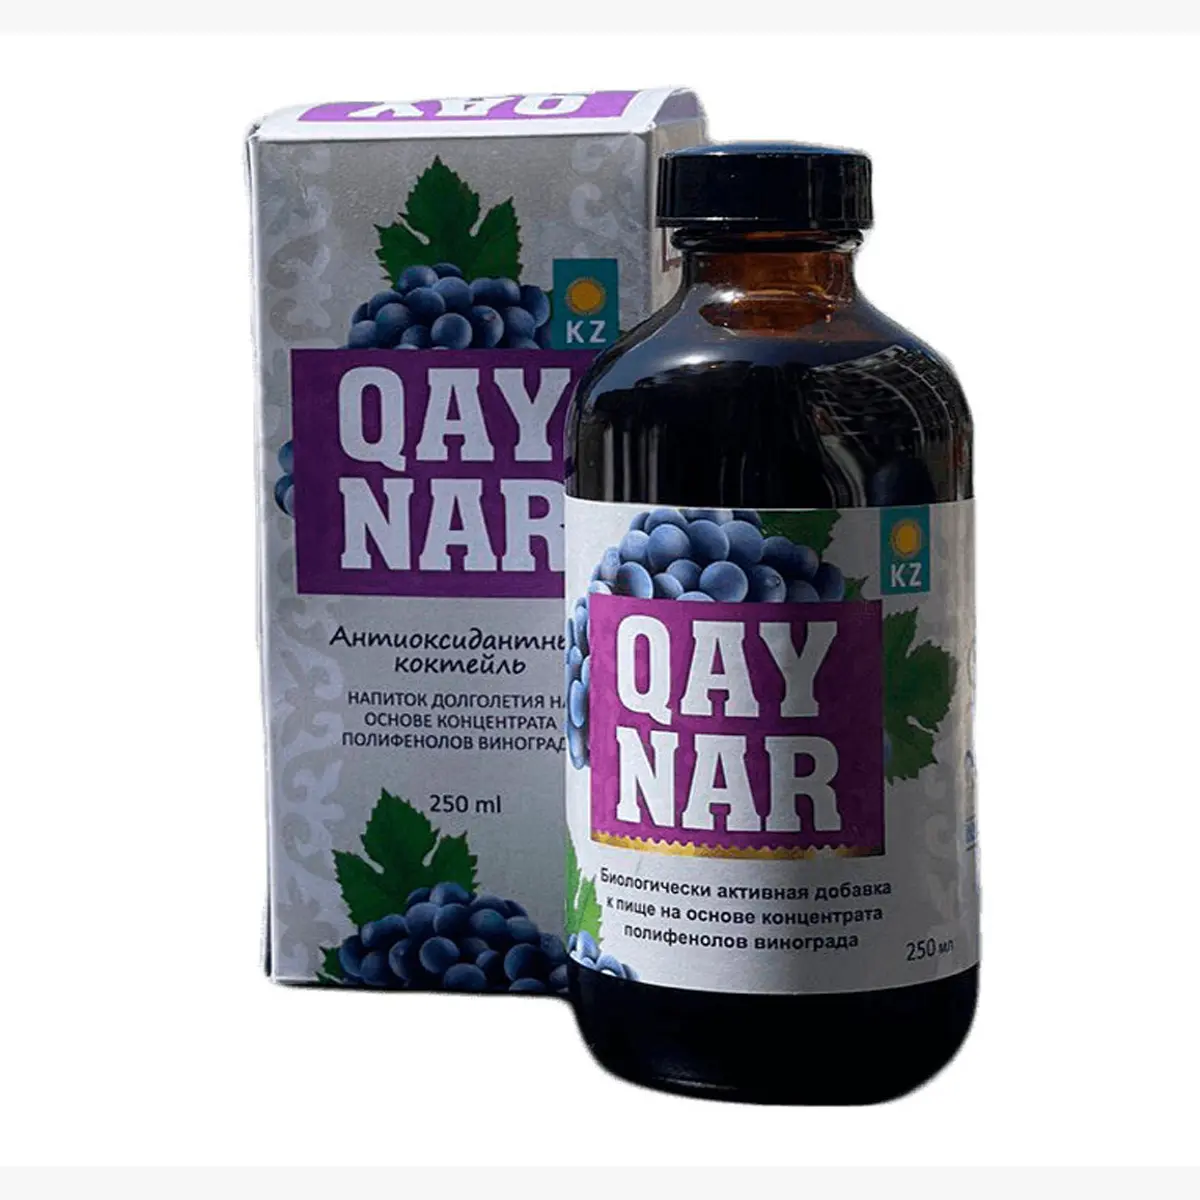 פוליפנול תמצית של ענבים זרעים "QAYNAR" ביו פעיל תוסף מזון מכיל נוגדי חמצון טבעיים, למעלה איכות מוצר